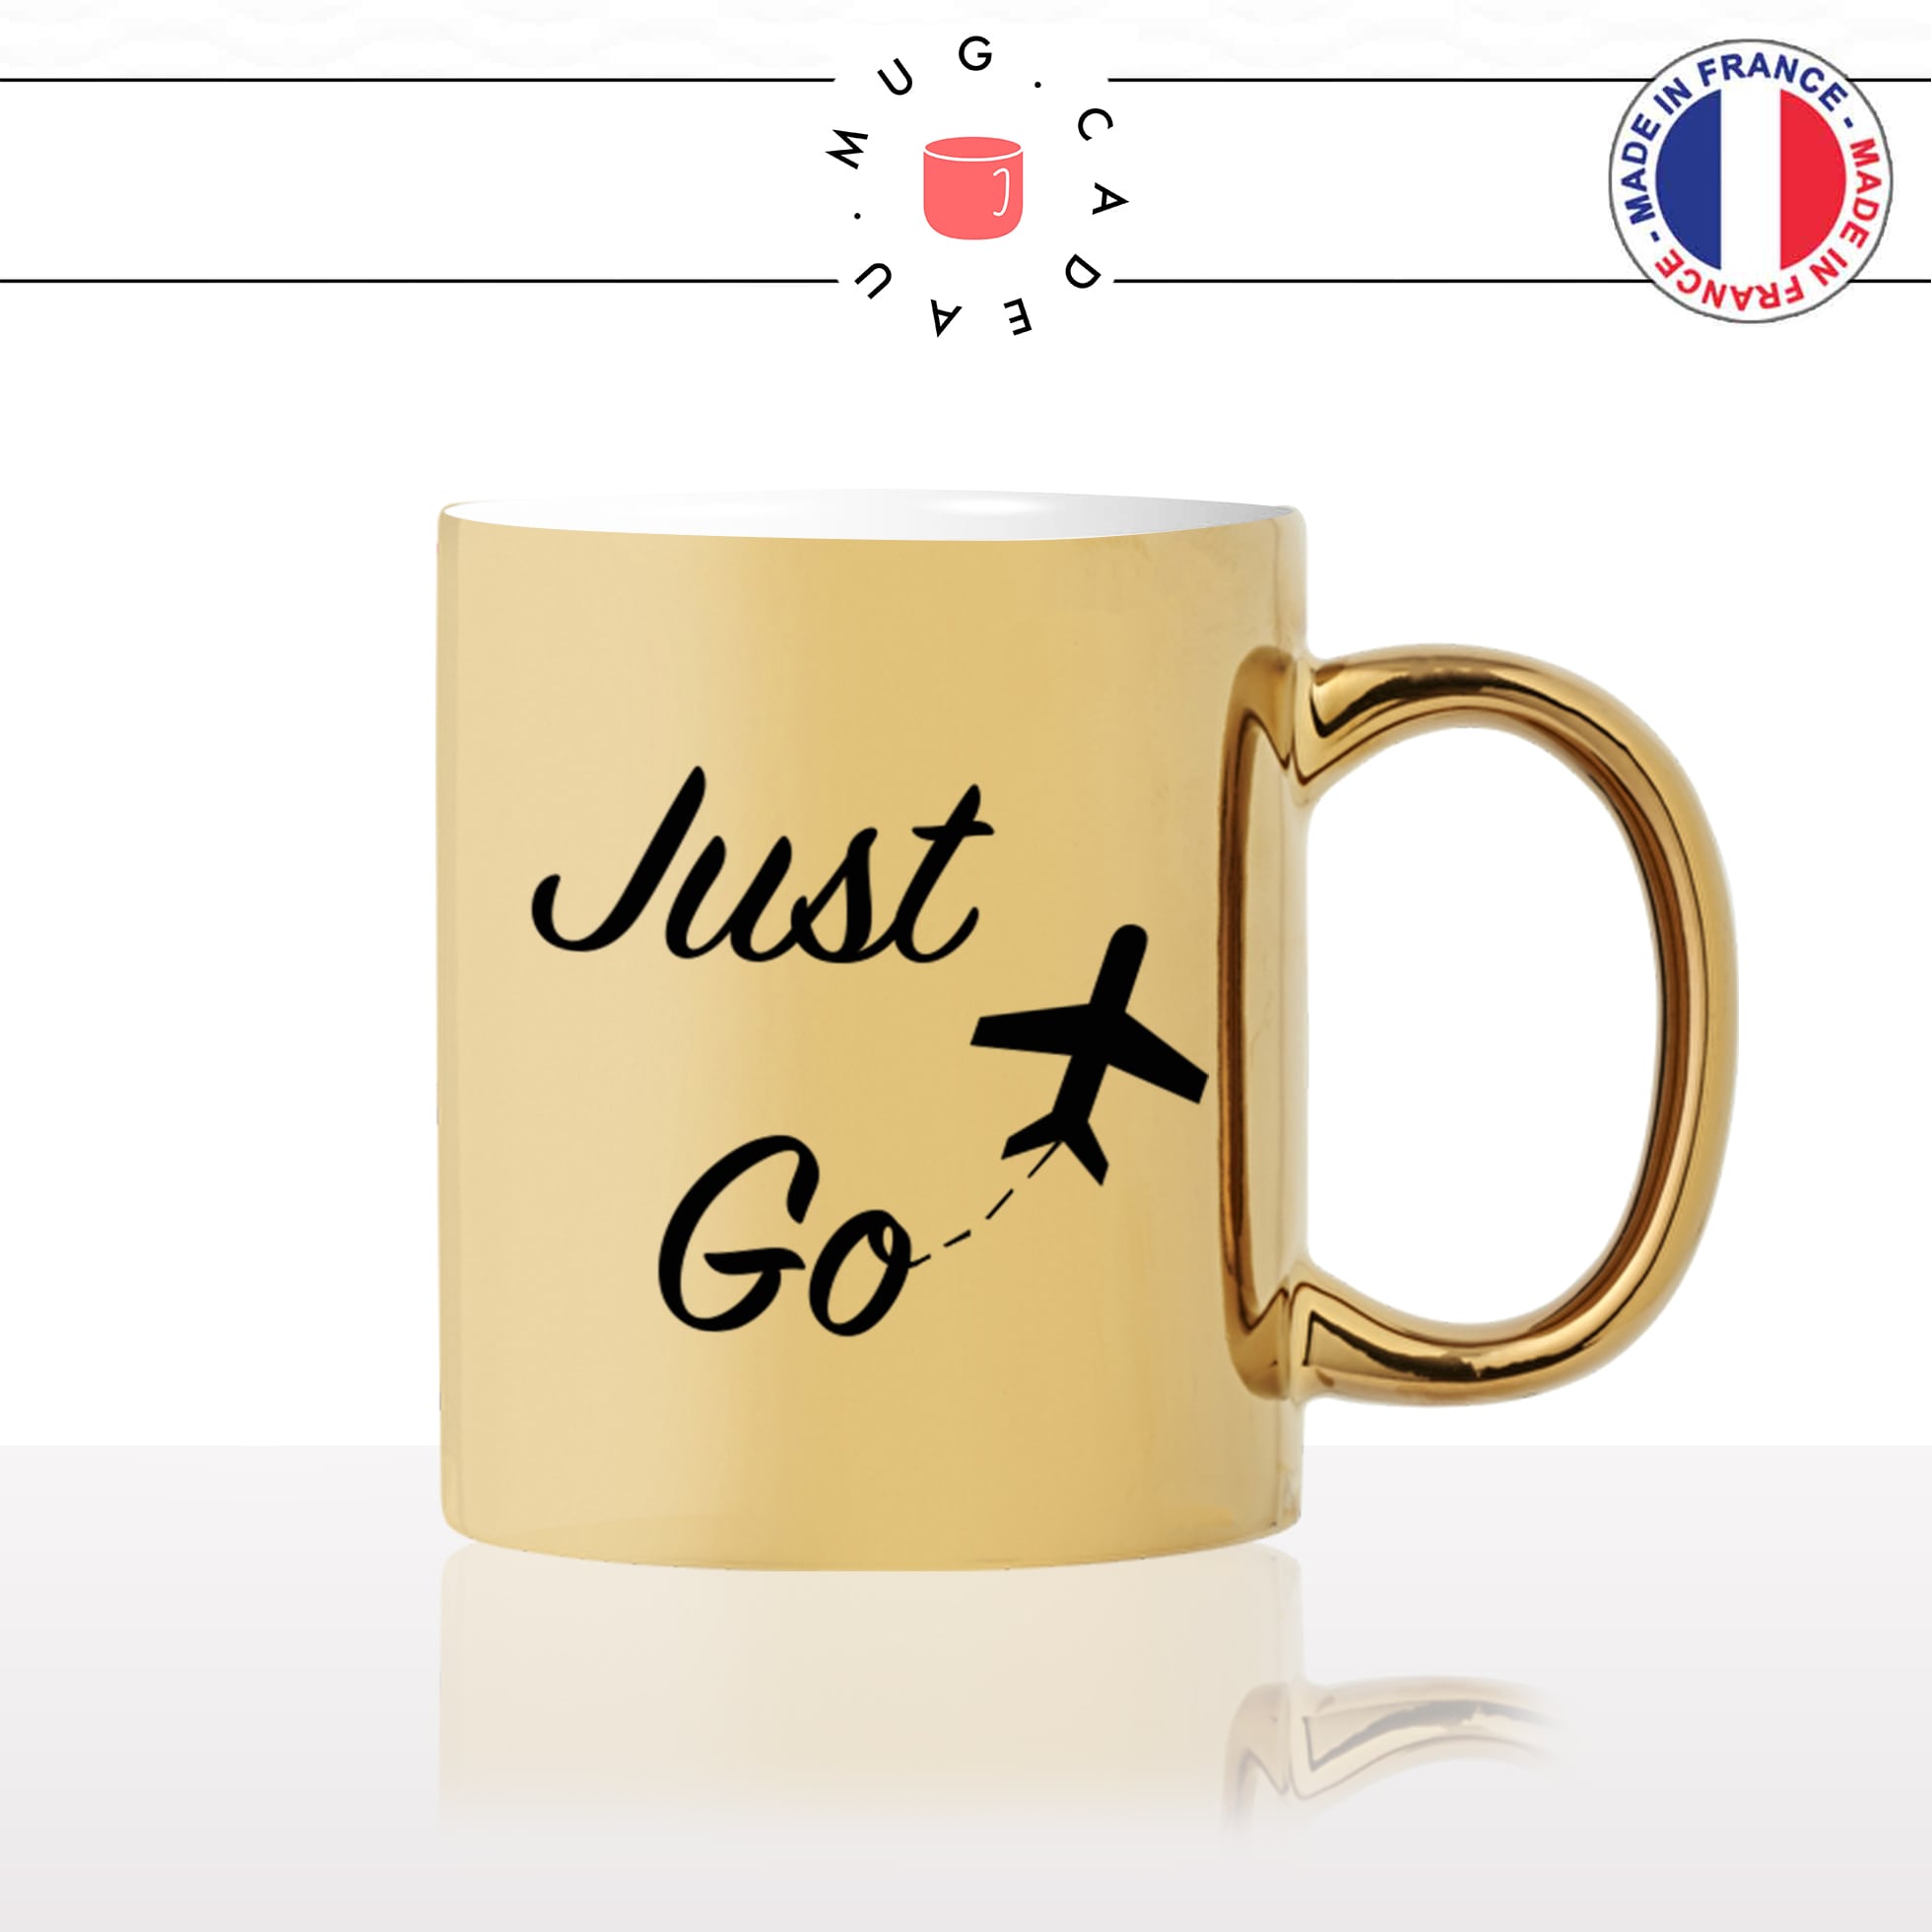 mug-tasse-doré-or-gold-just-go-avion-soleil-bronzer-vacances-voyage-travail-collegue-cool-humour-fun-idée-cadeau-personnalisé-café-thé2-min